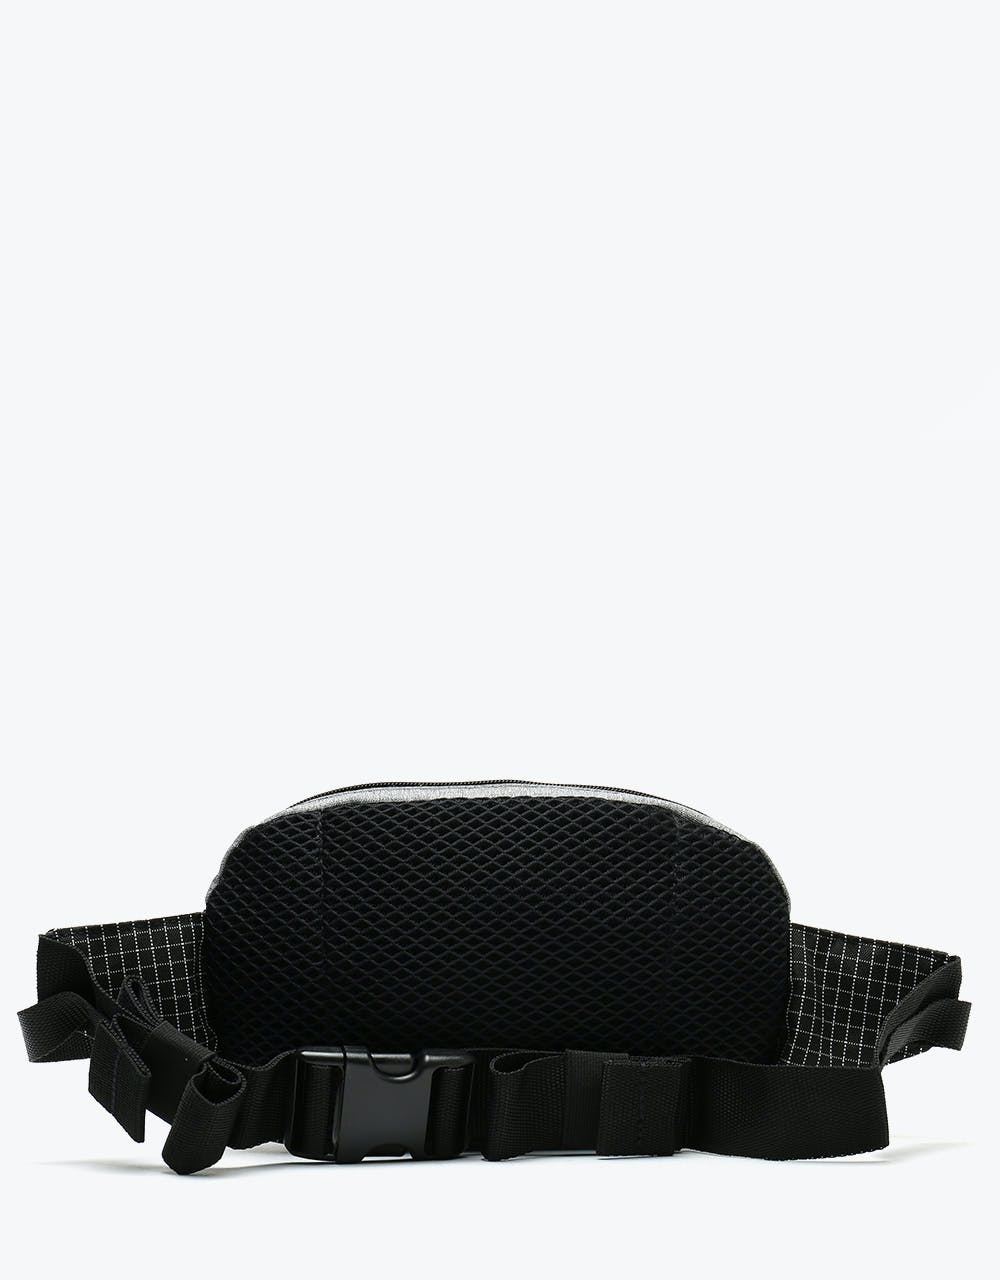 Vans Aliso II Cross Body Bag - Heather Suiting/Black